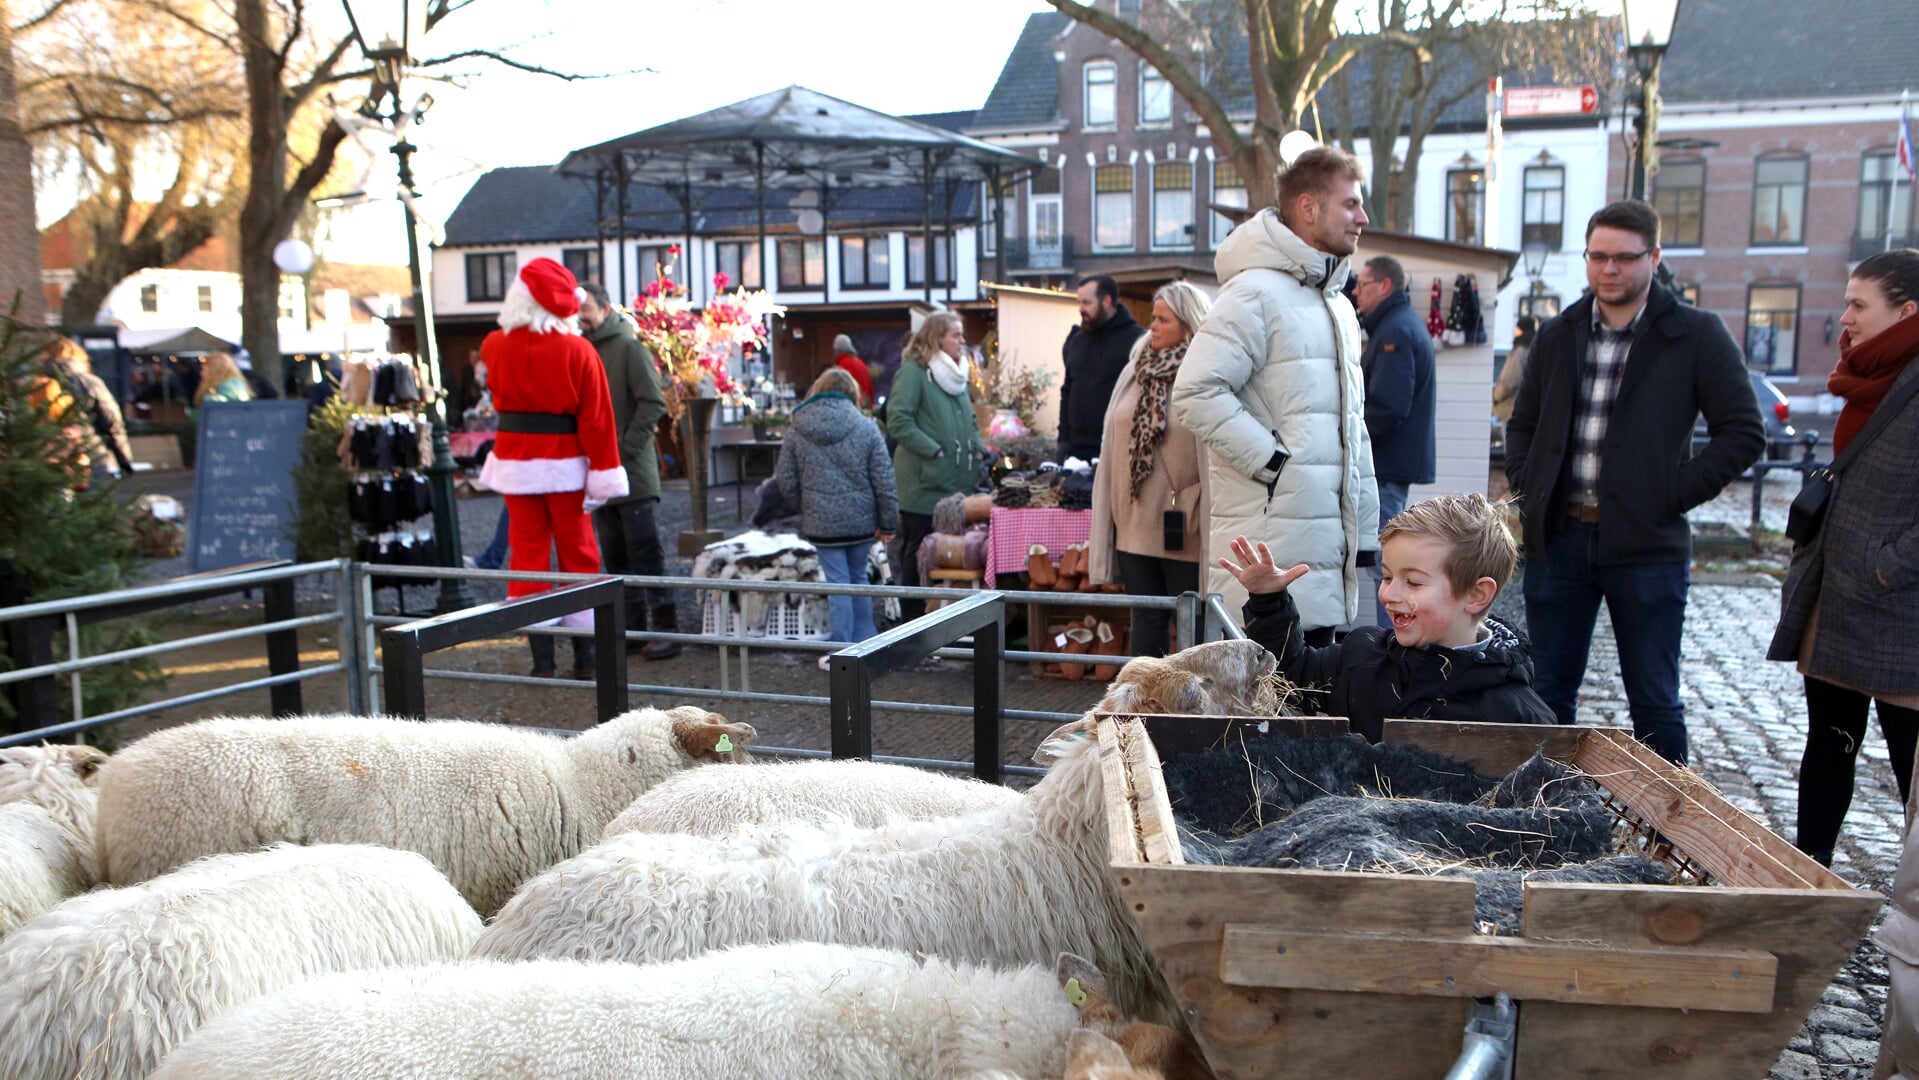 De eerste kerstfair in Groede, vorig jaar, was een groot succes. Jong en oud vermaakten zich opperbest. Foto: Peter Verdurmen